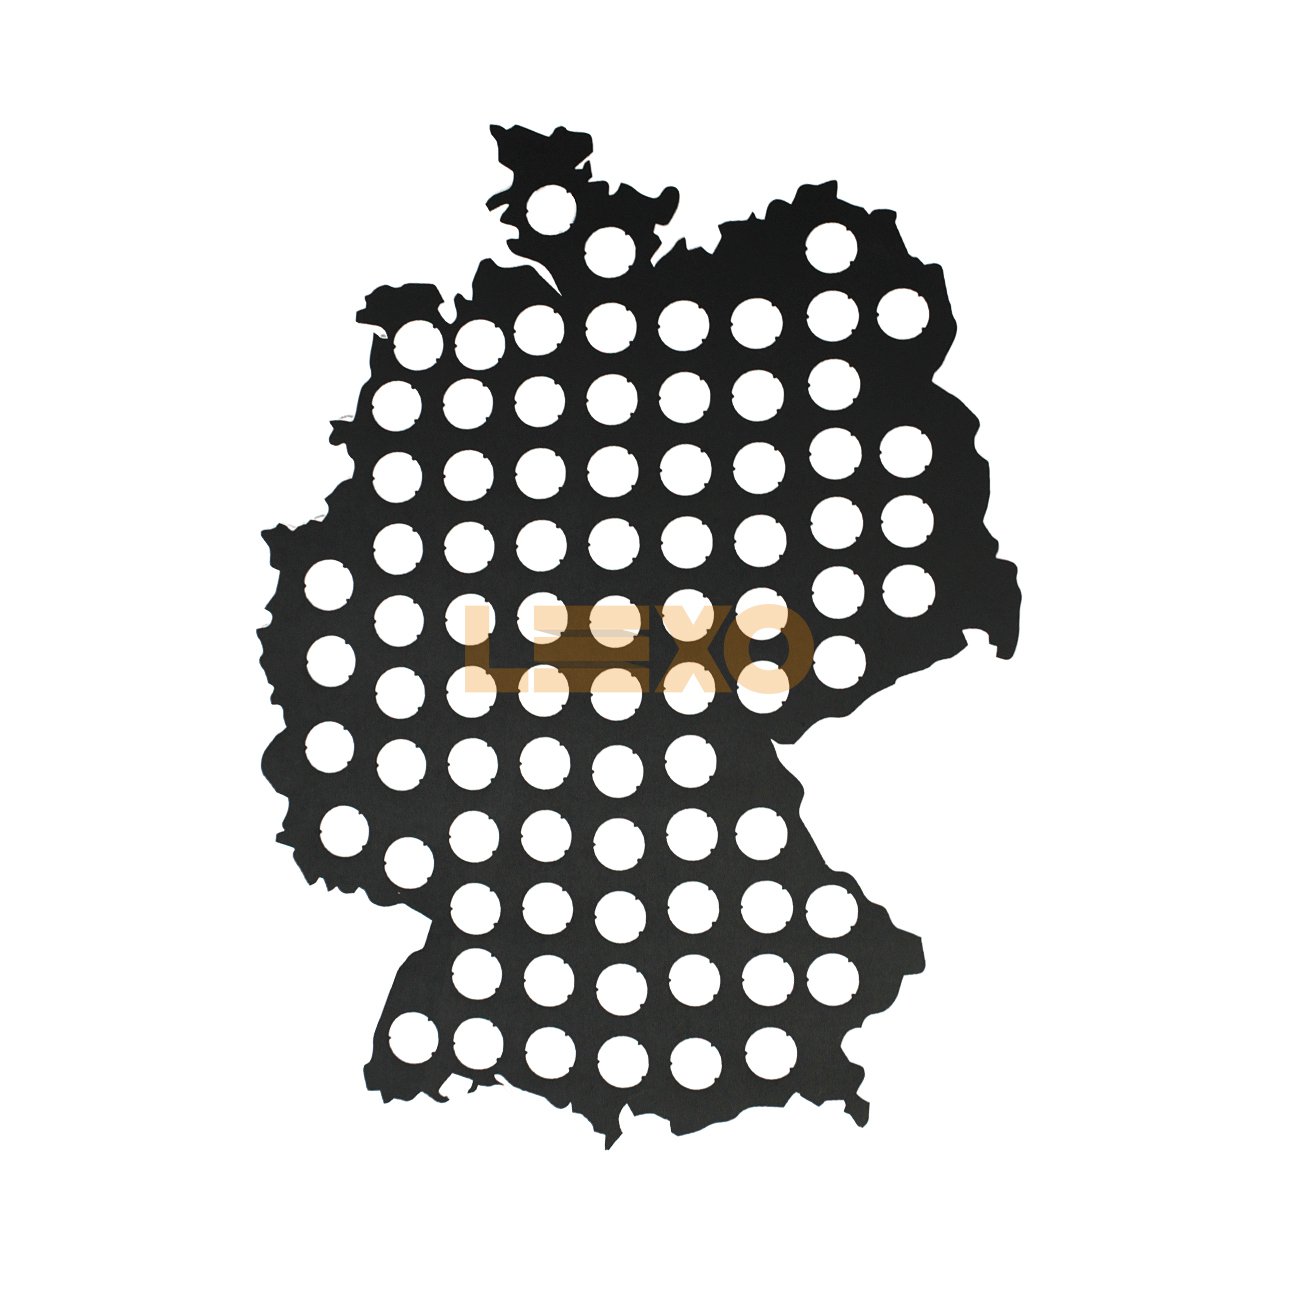 Mapa Porta Tampinhas Do Alemanha- Bar Light